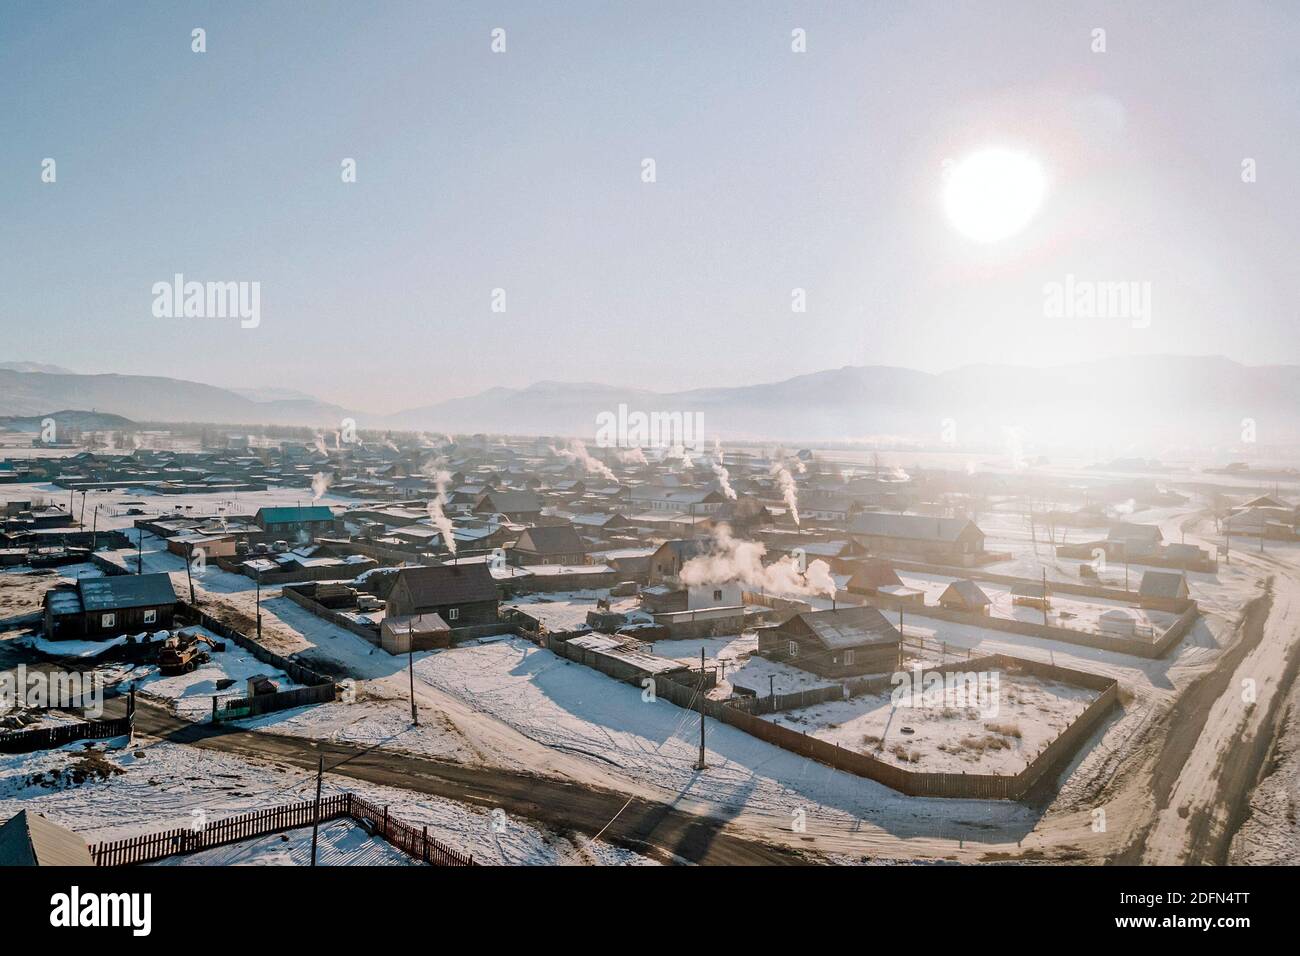 Villaggio in Siberia durante il giorno. La vista dall'alto. Molte case in legno in campagna con riscaldamento a stufa. Giorno gelido. Foto Stock